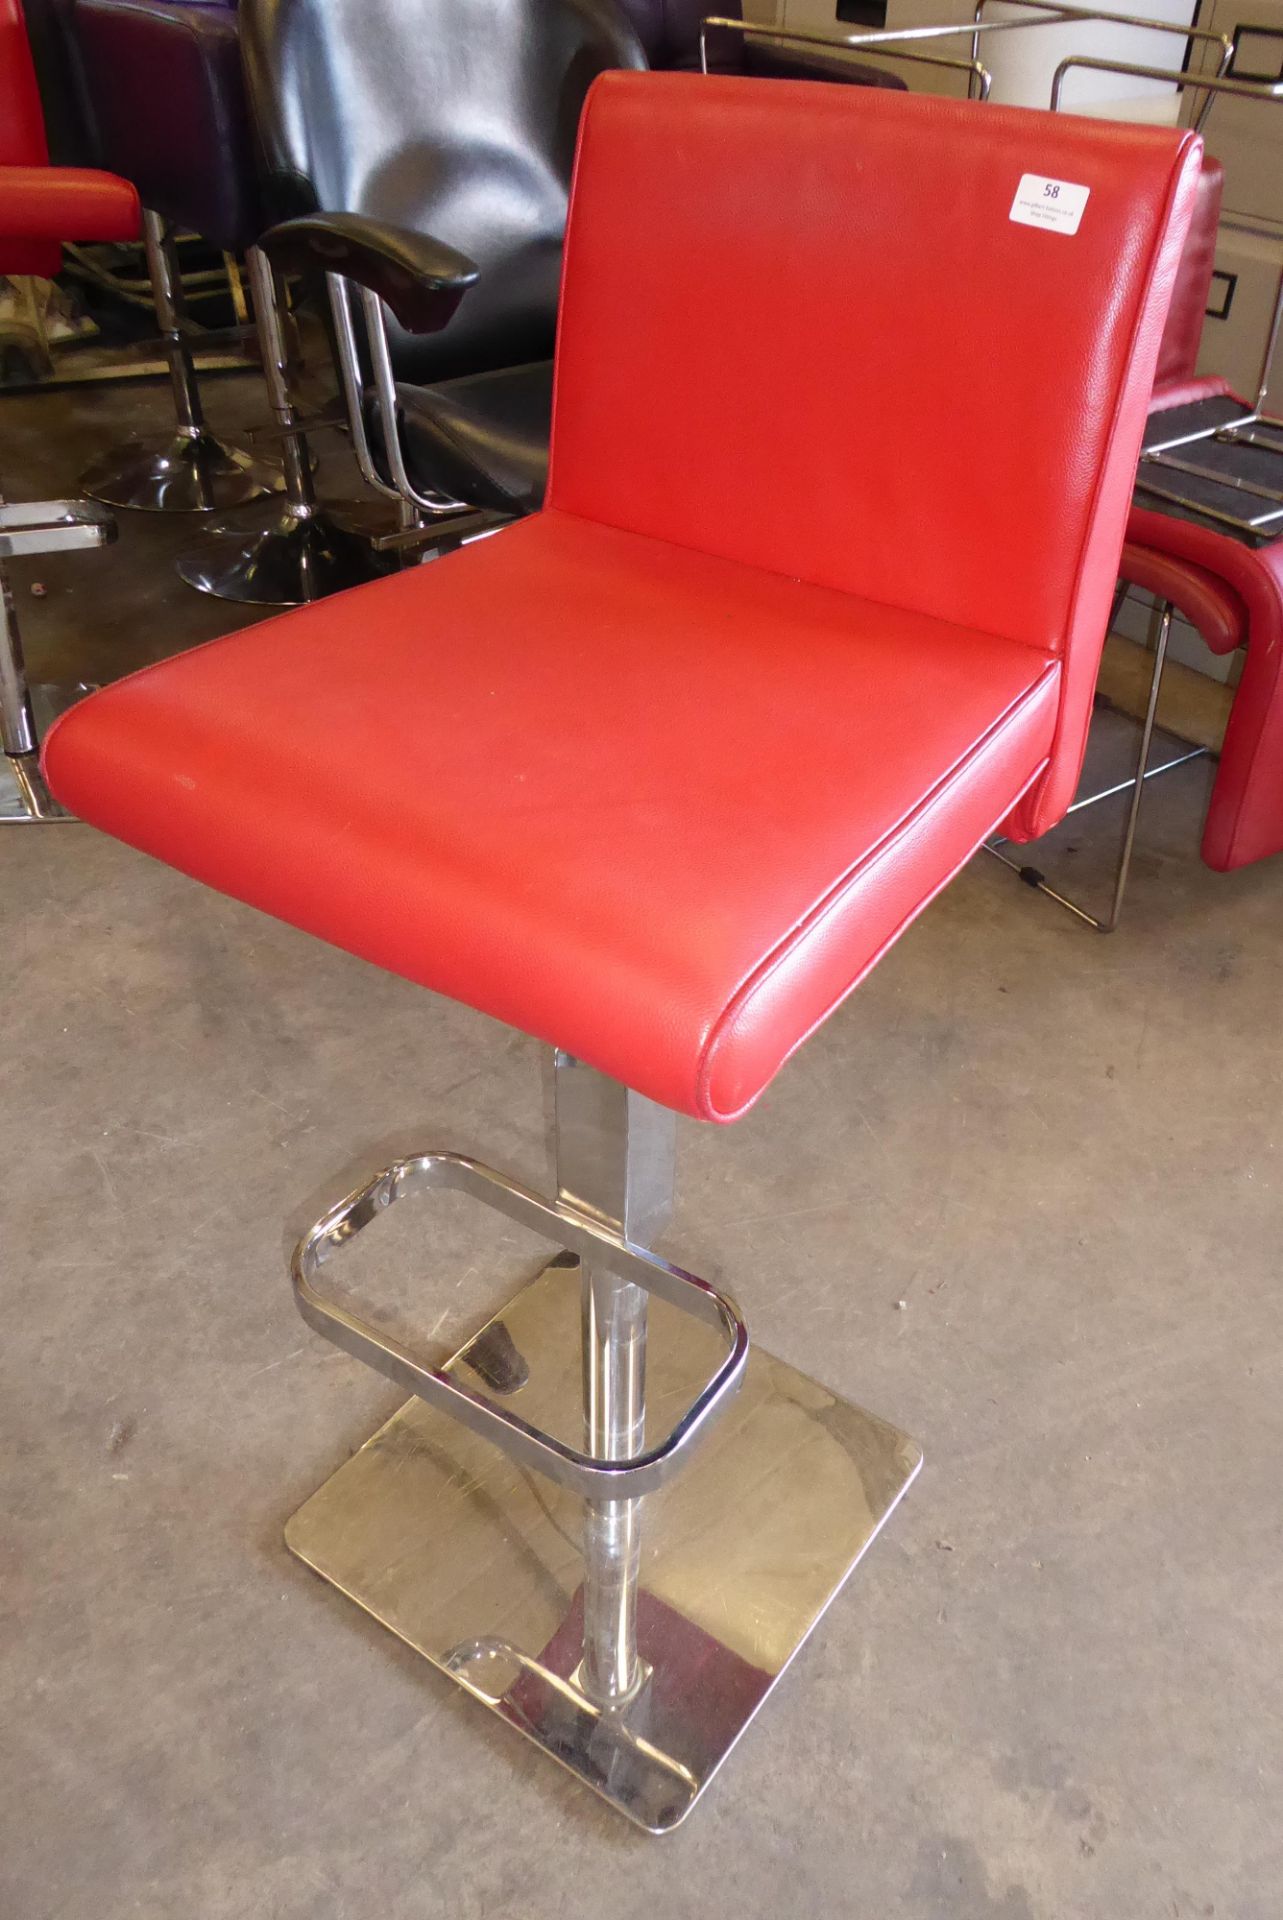 * Red adjustable gas strut chrome base Elizabeth Arden branded chair